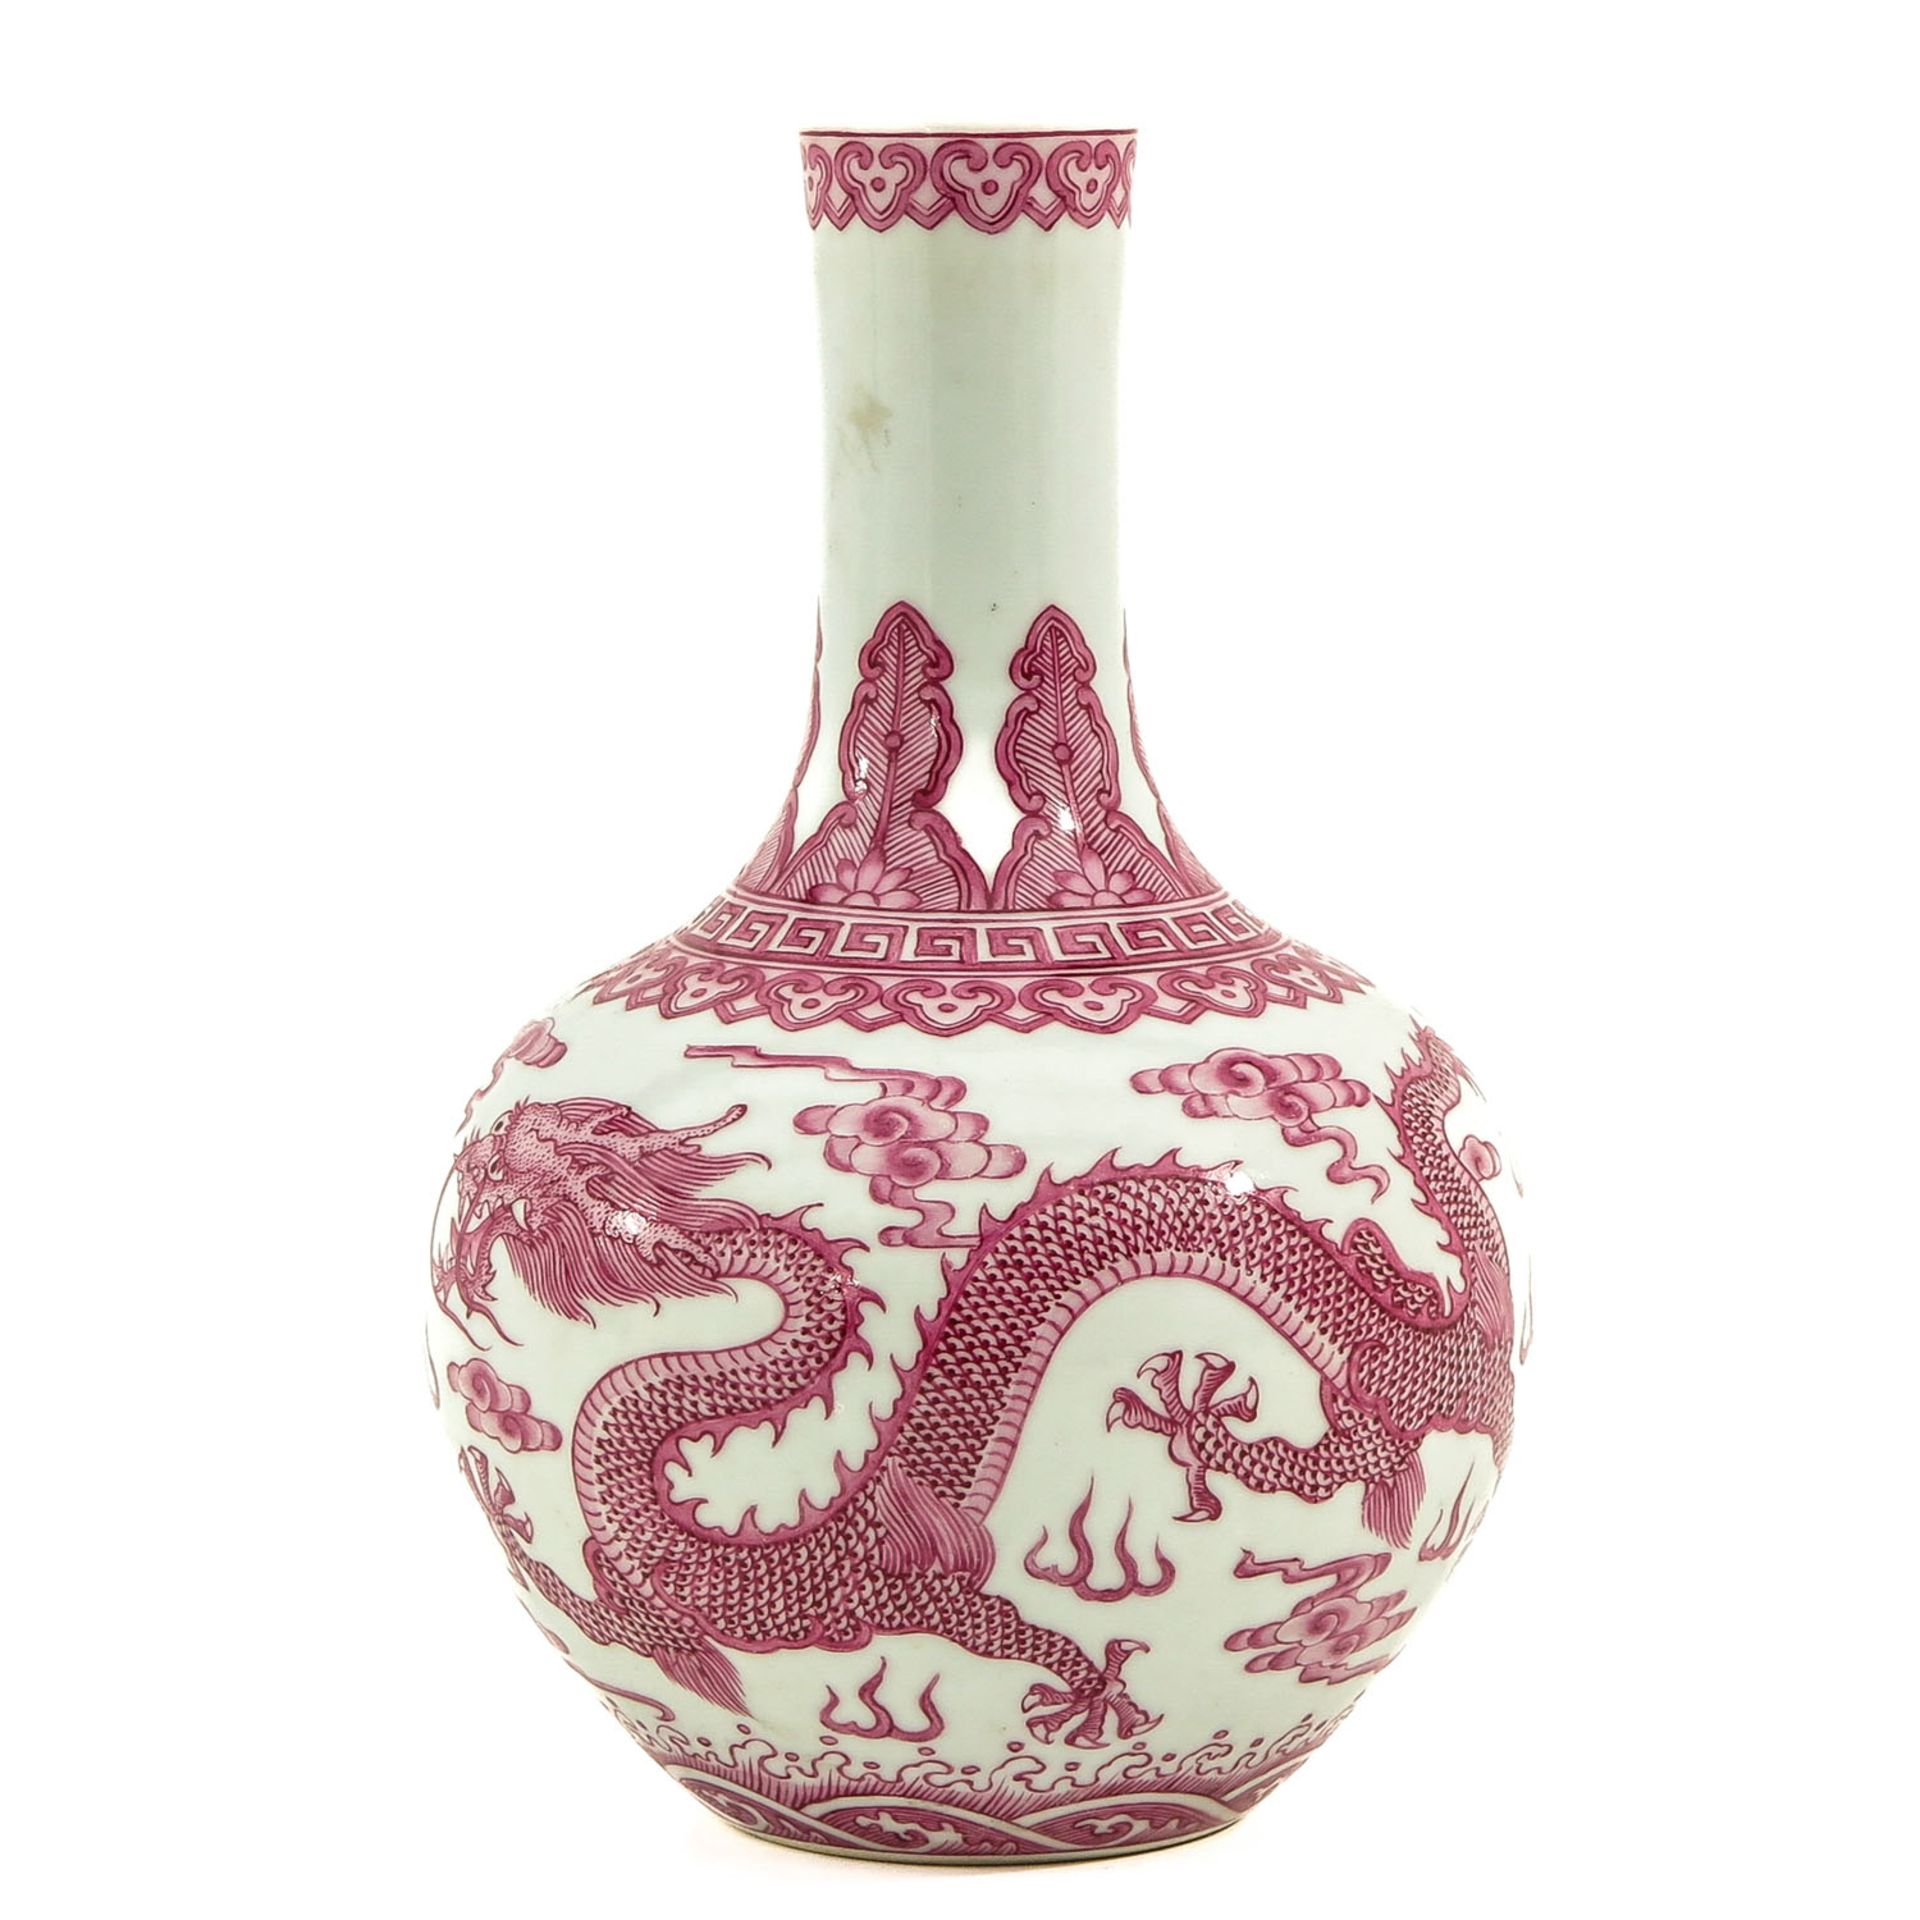 A Pink Decor Bottle Vase - Image 3 of 10